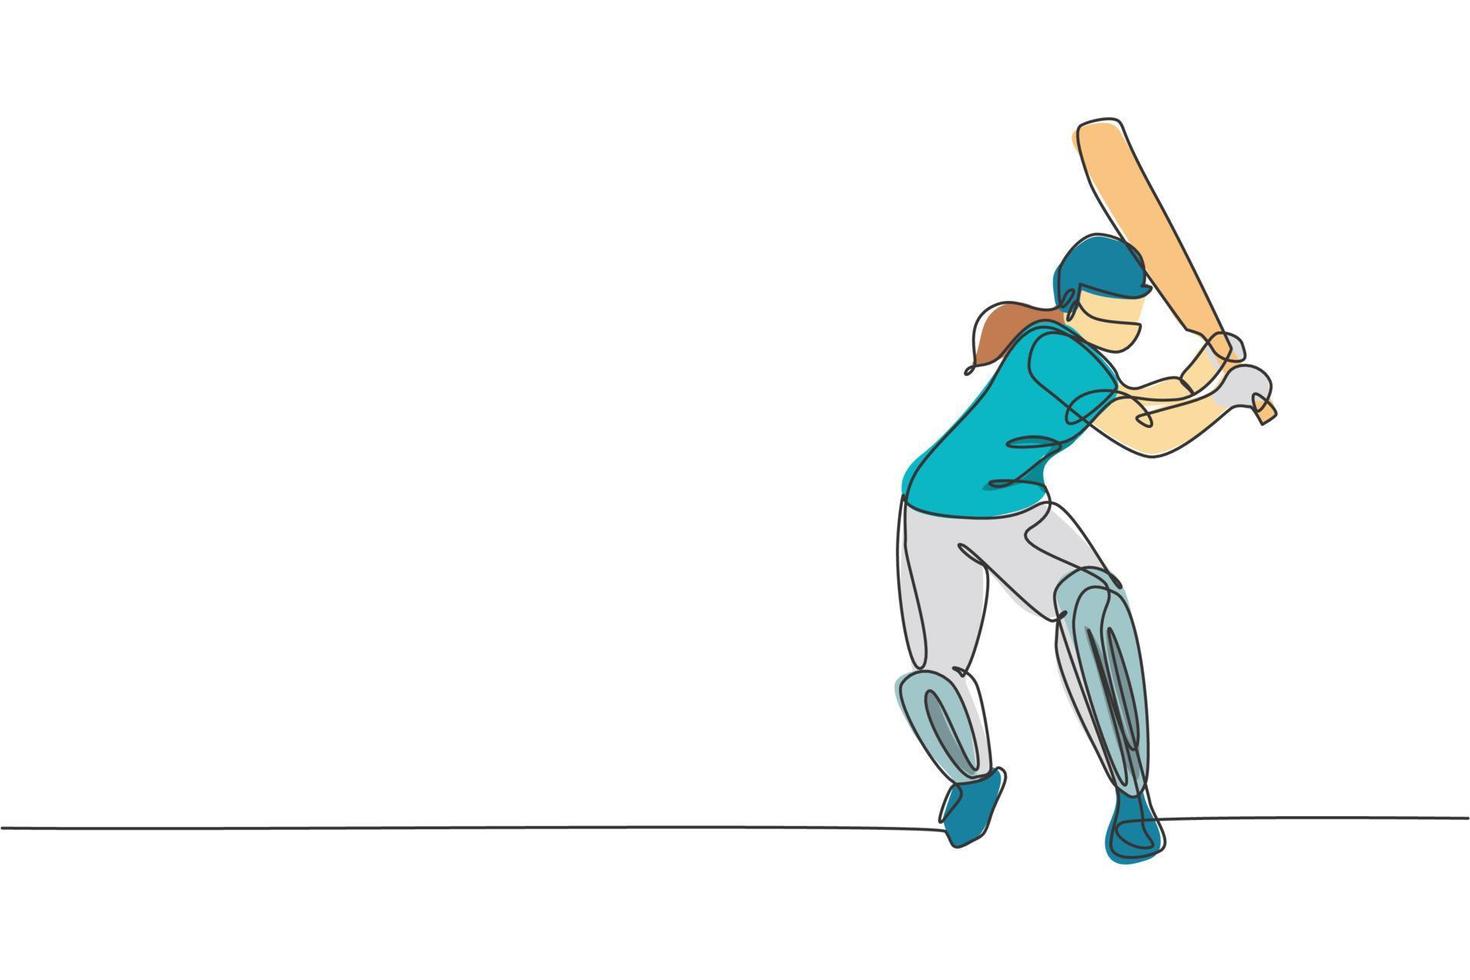 dessin en ligne continue unique d'un jeune homme agile joueur de cricket  balançoire batte de cricket à l'illustration vectorielle du terrain d'entraînement.  concept d'exercice sportif. conception à la mode d'une ligne pour